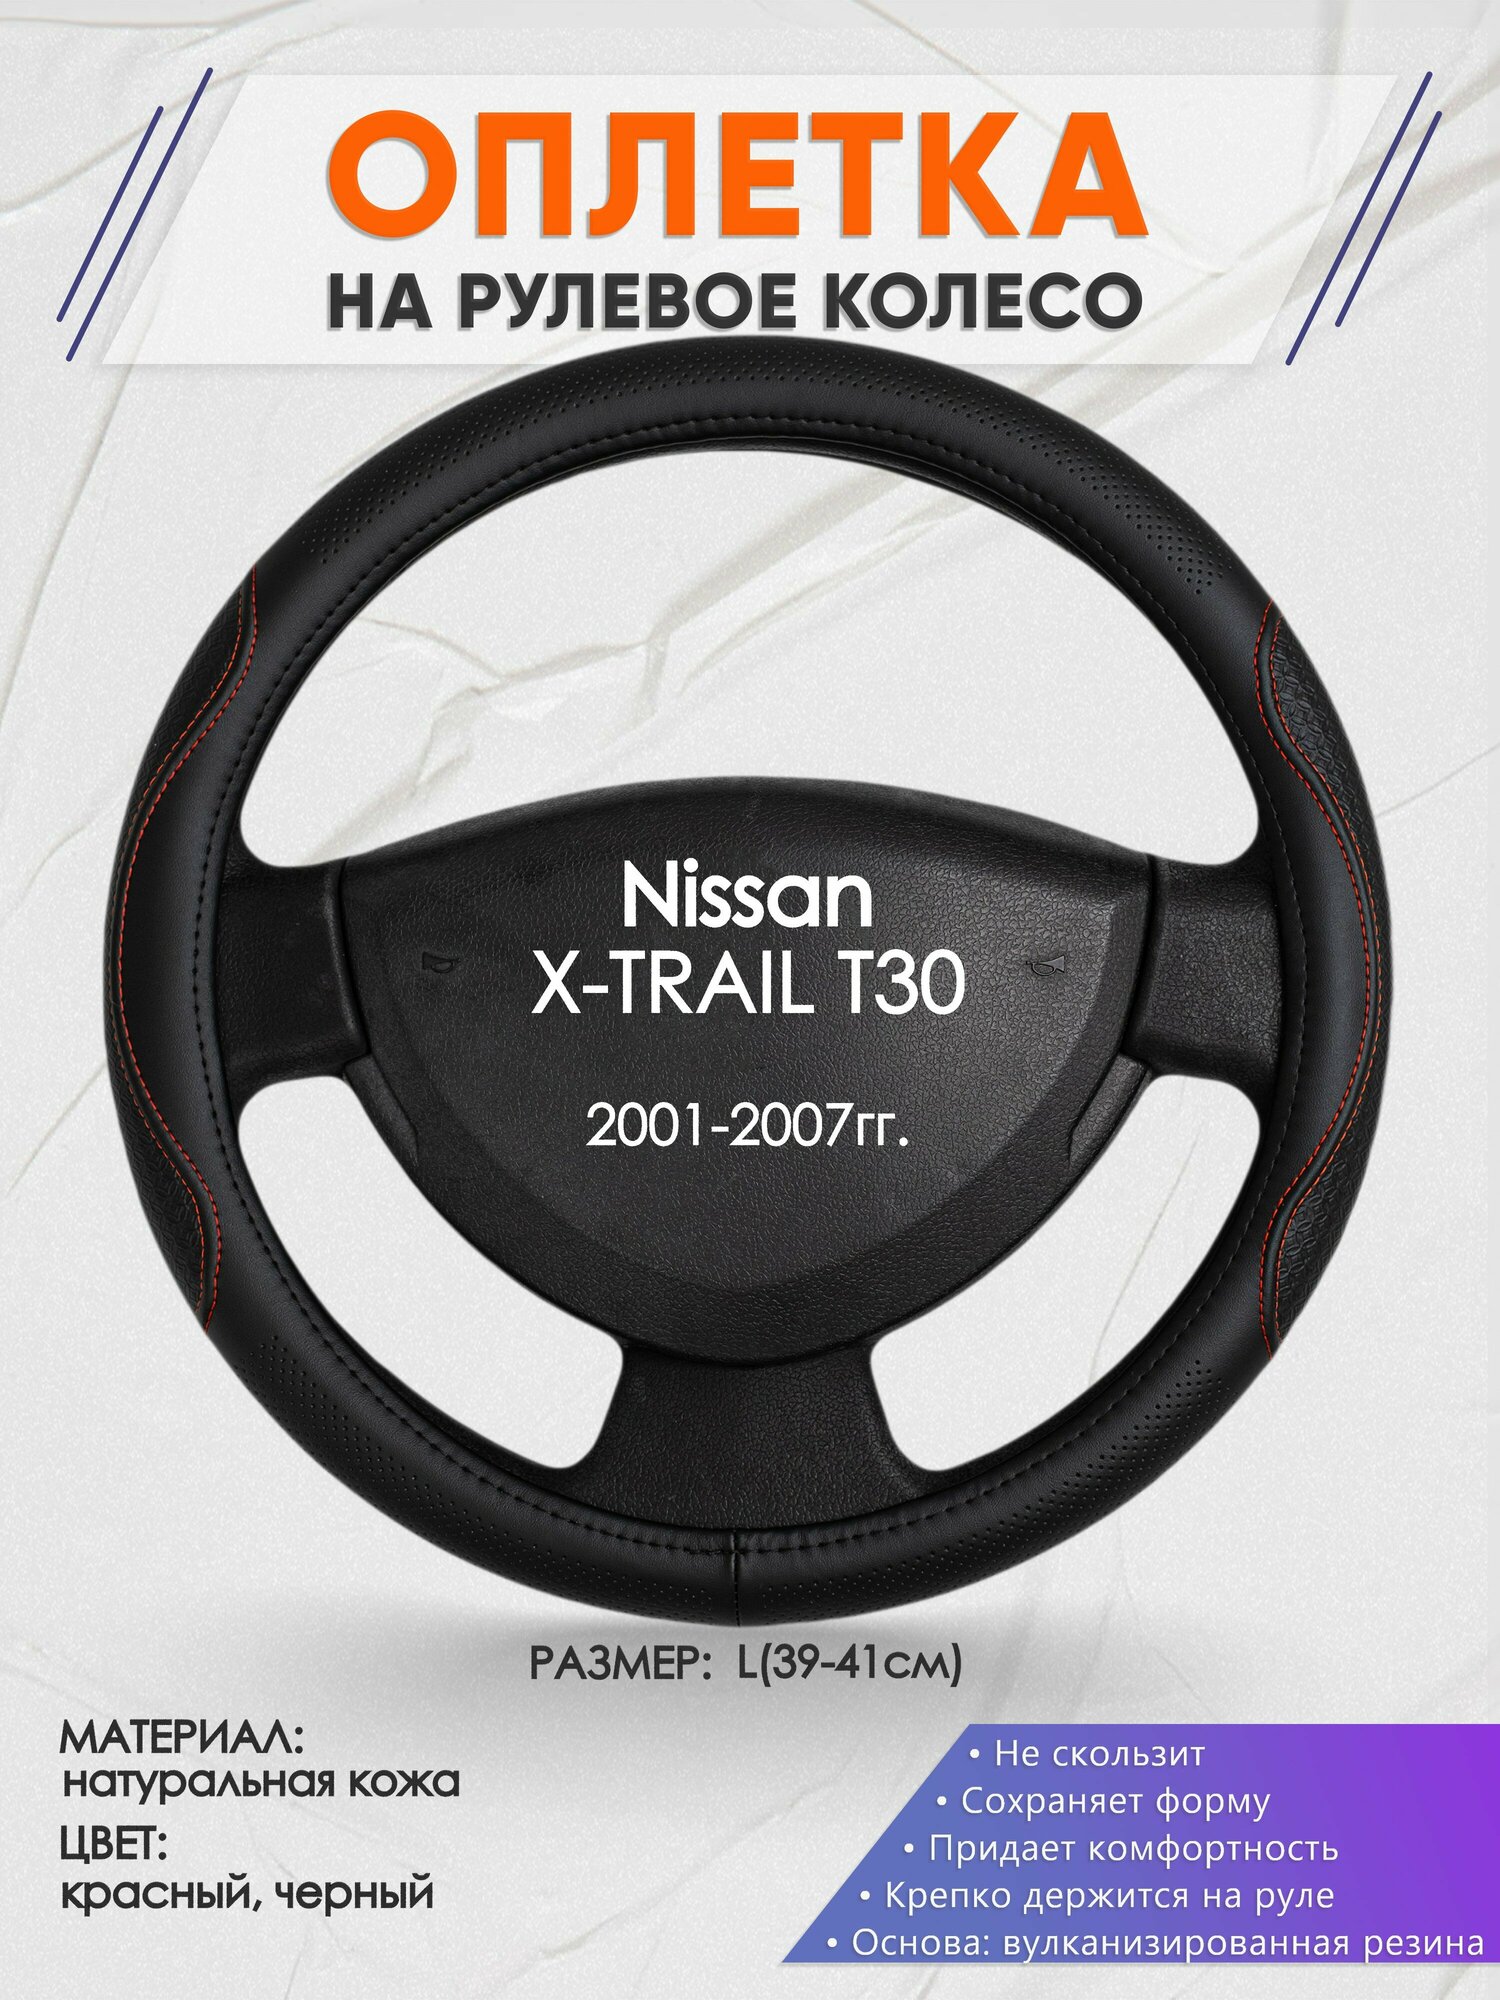 Оплетка на руль для Nissan X-TRAIL T30(Ниссан Икс Трейл) 2001-2007, L(39-41см), Натуральная кожа 27